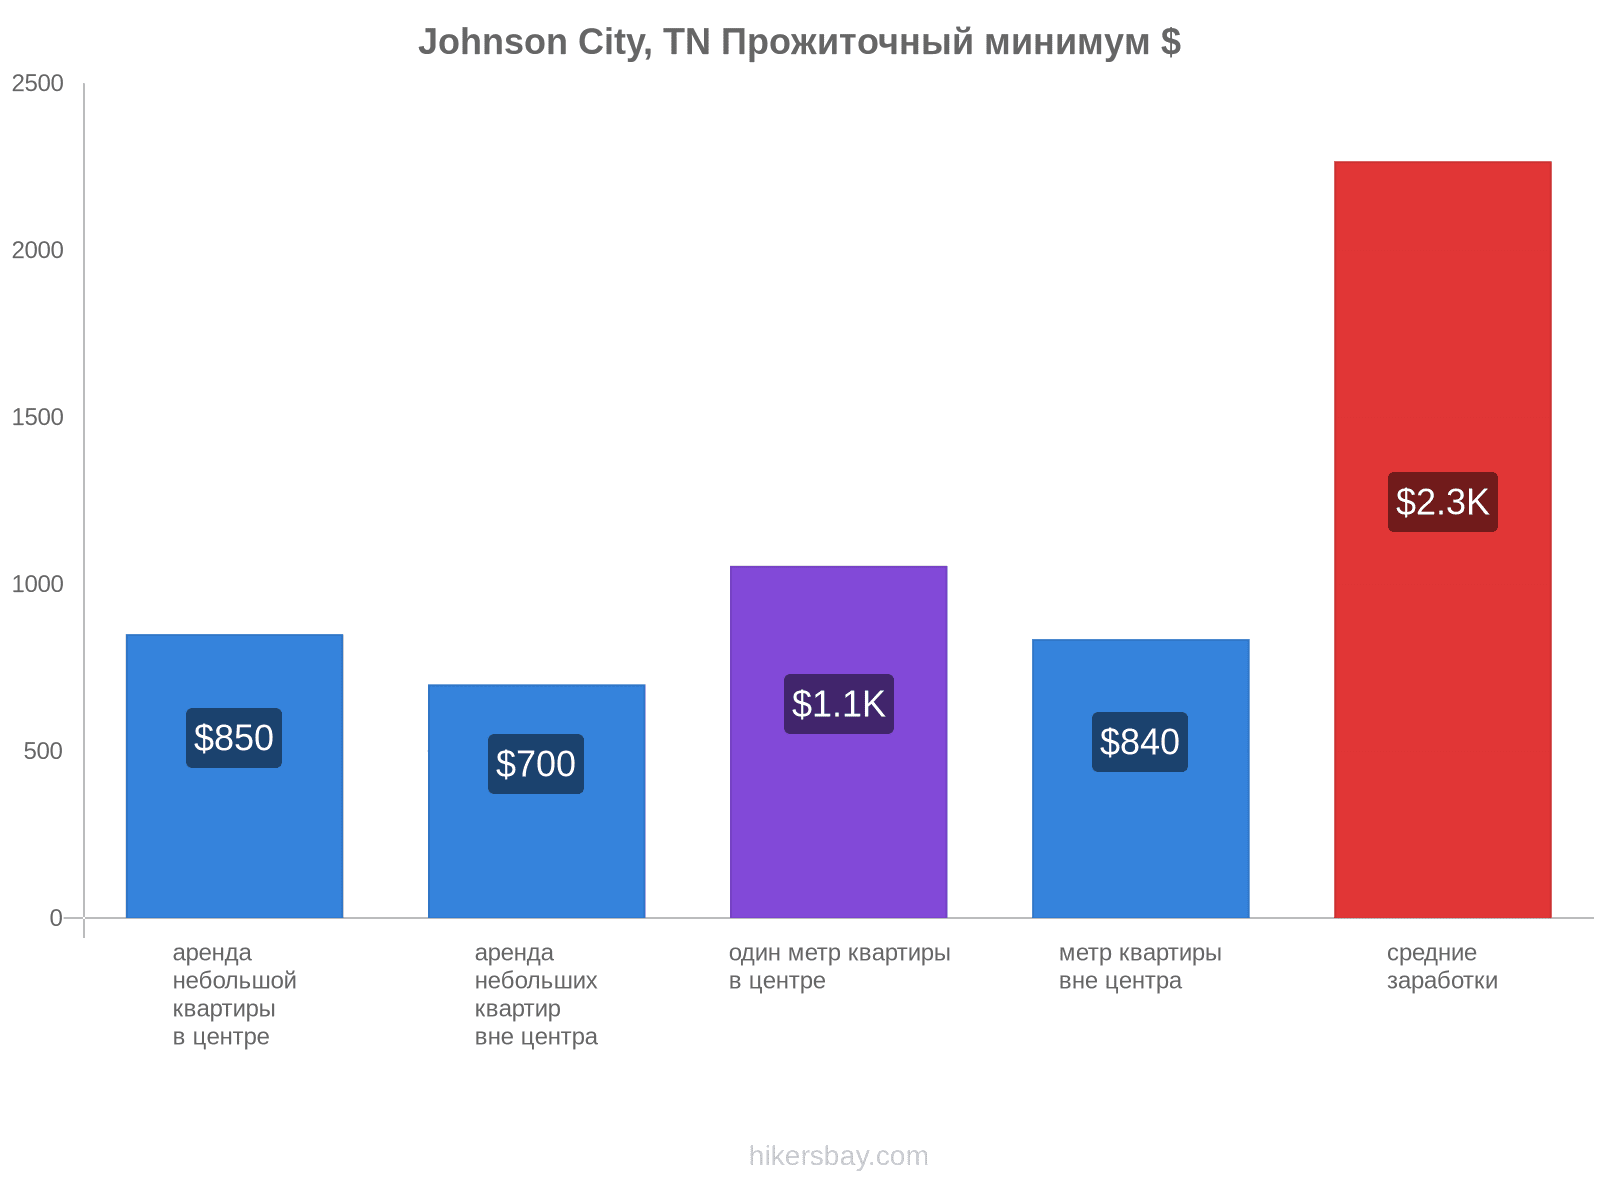 Johnson City, TN стоимость жизни hikersbay.com